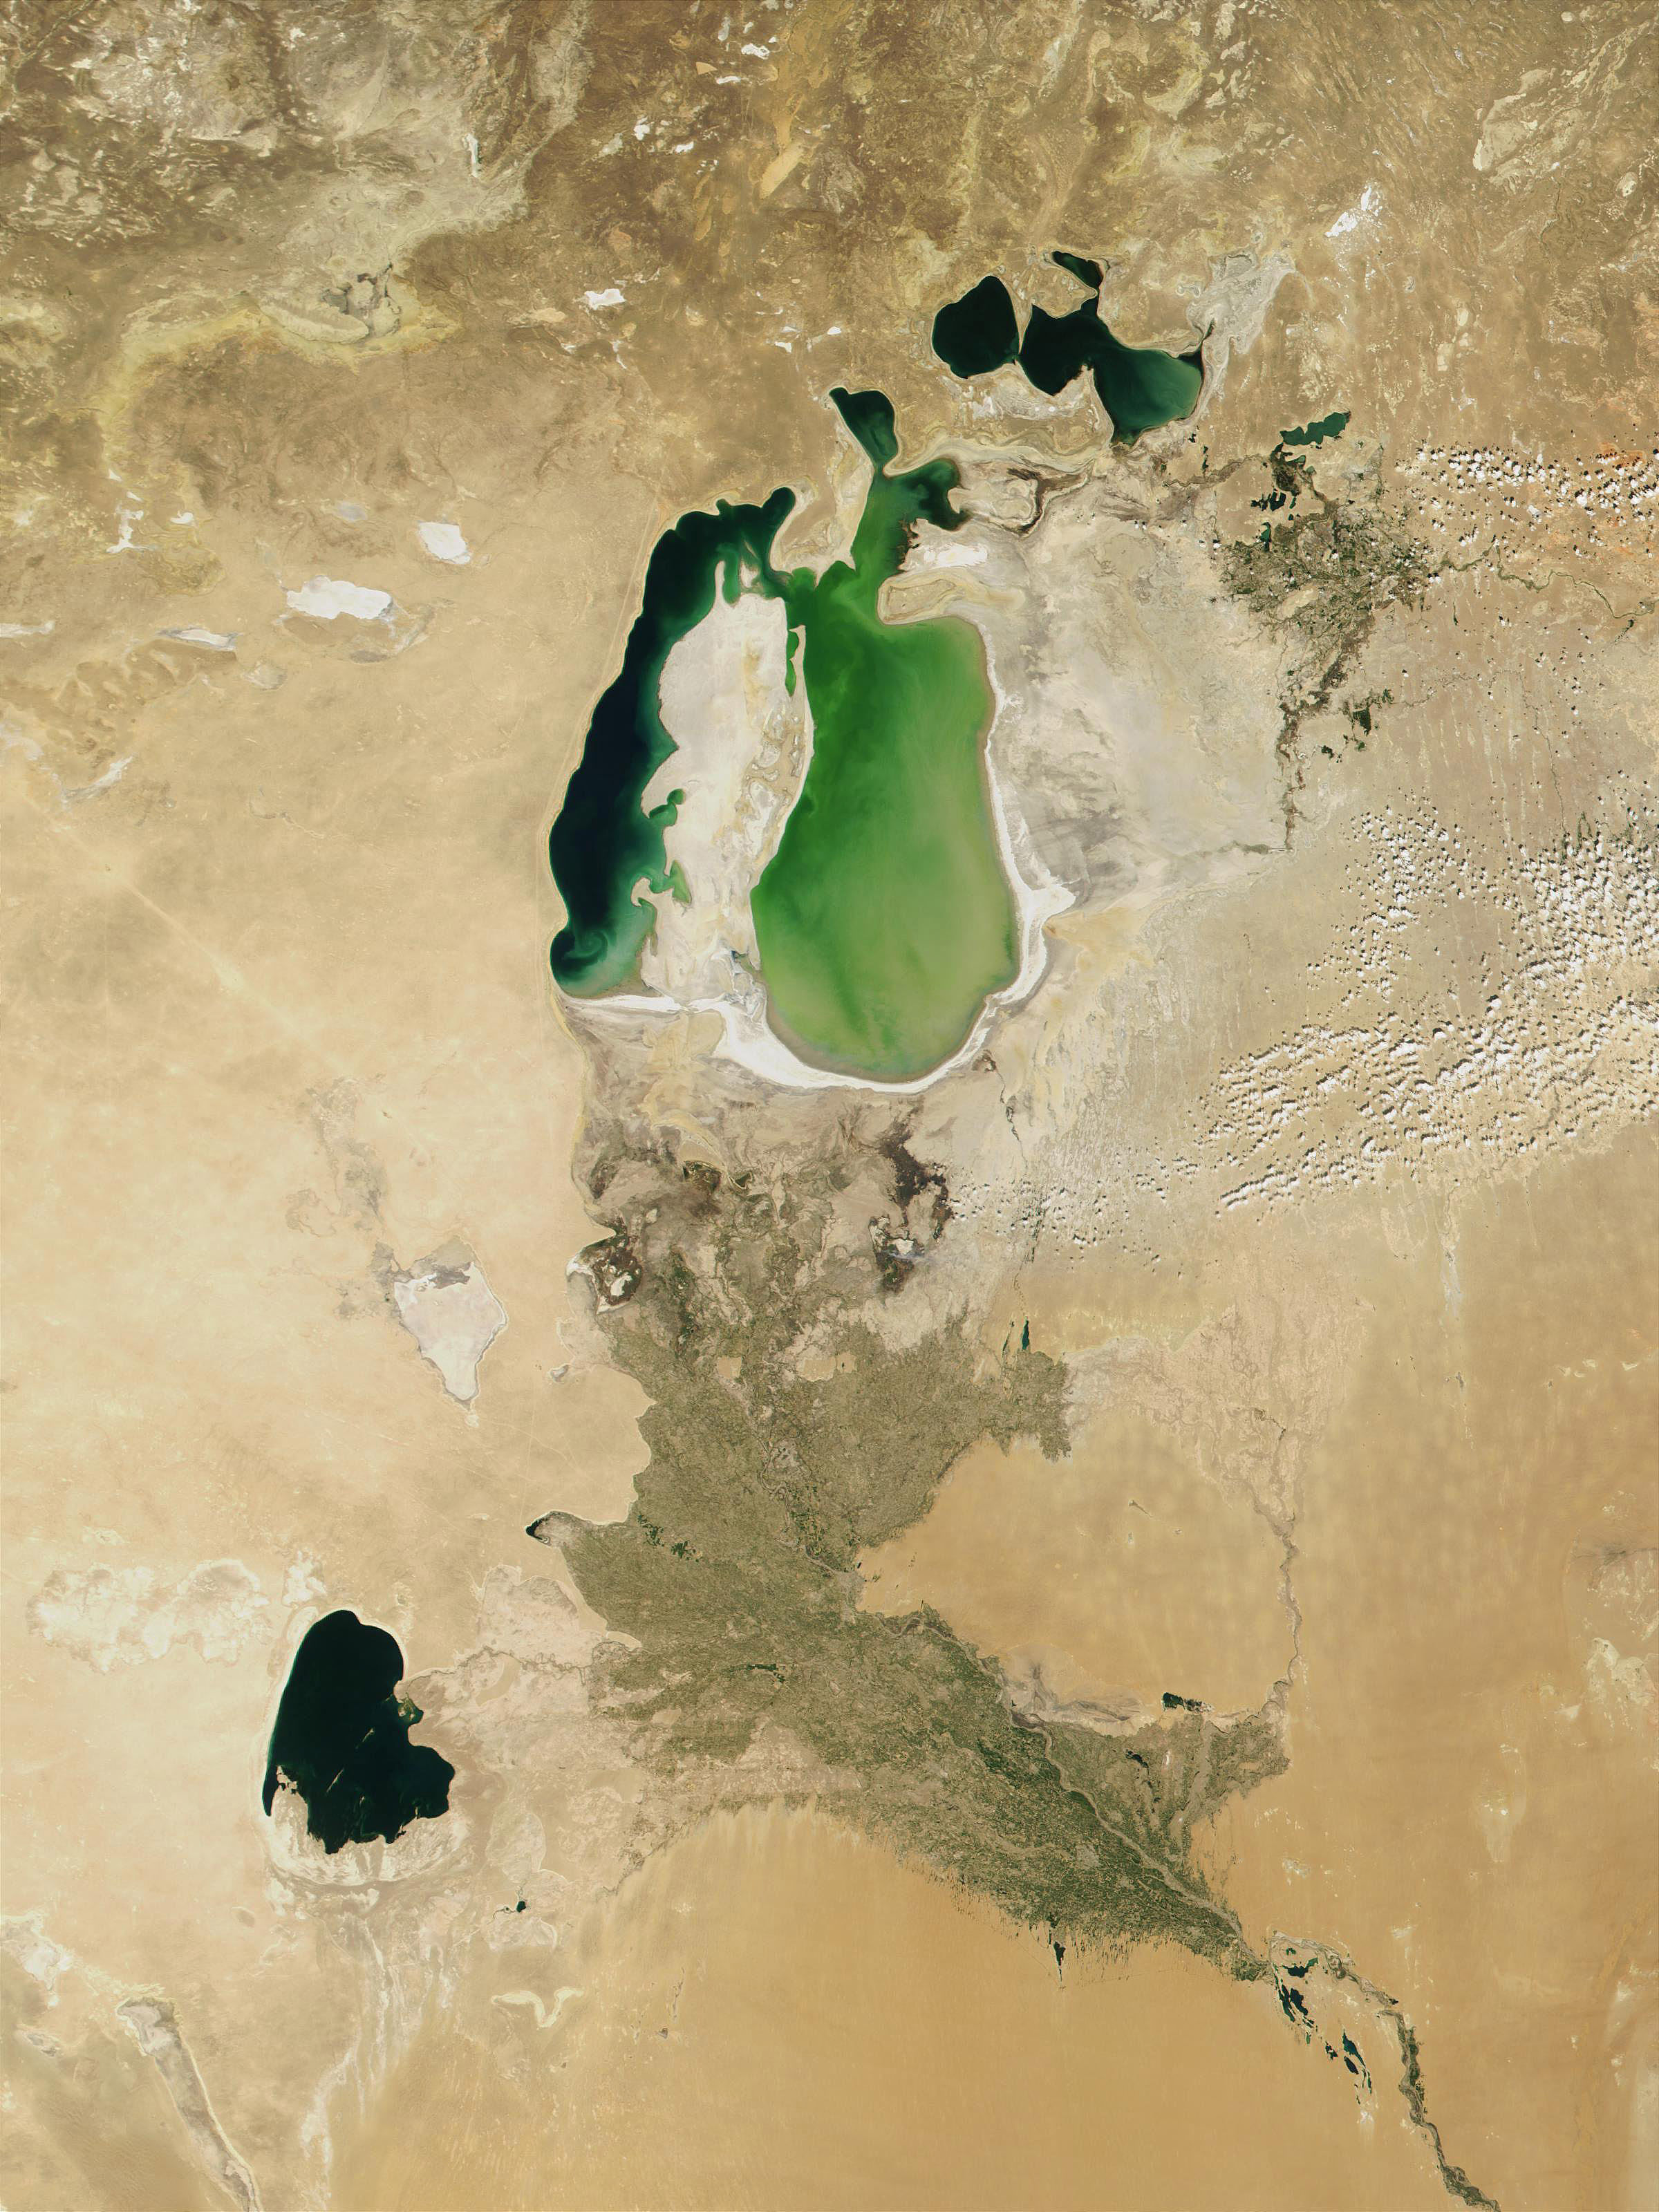 Аральское море 1960-2020